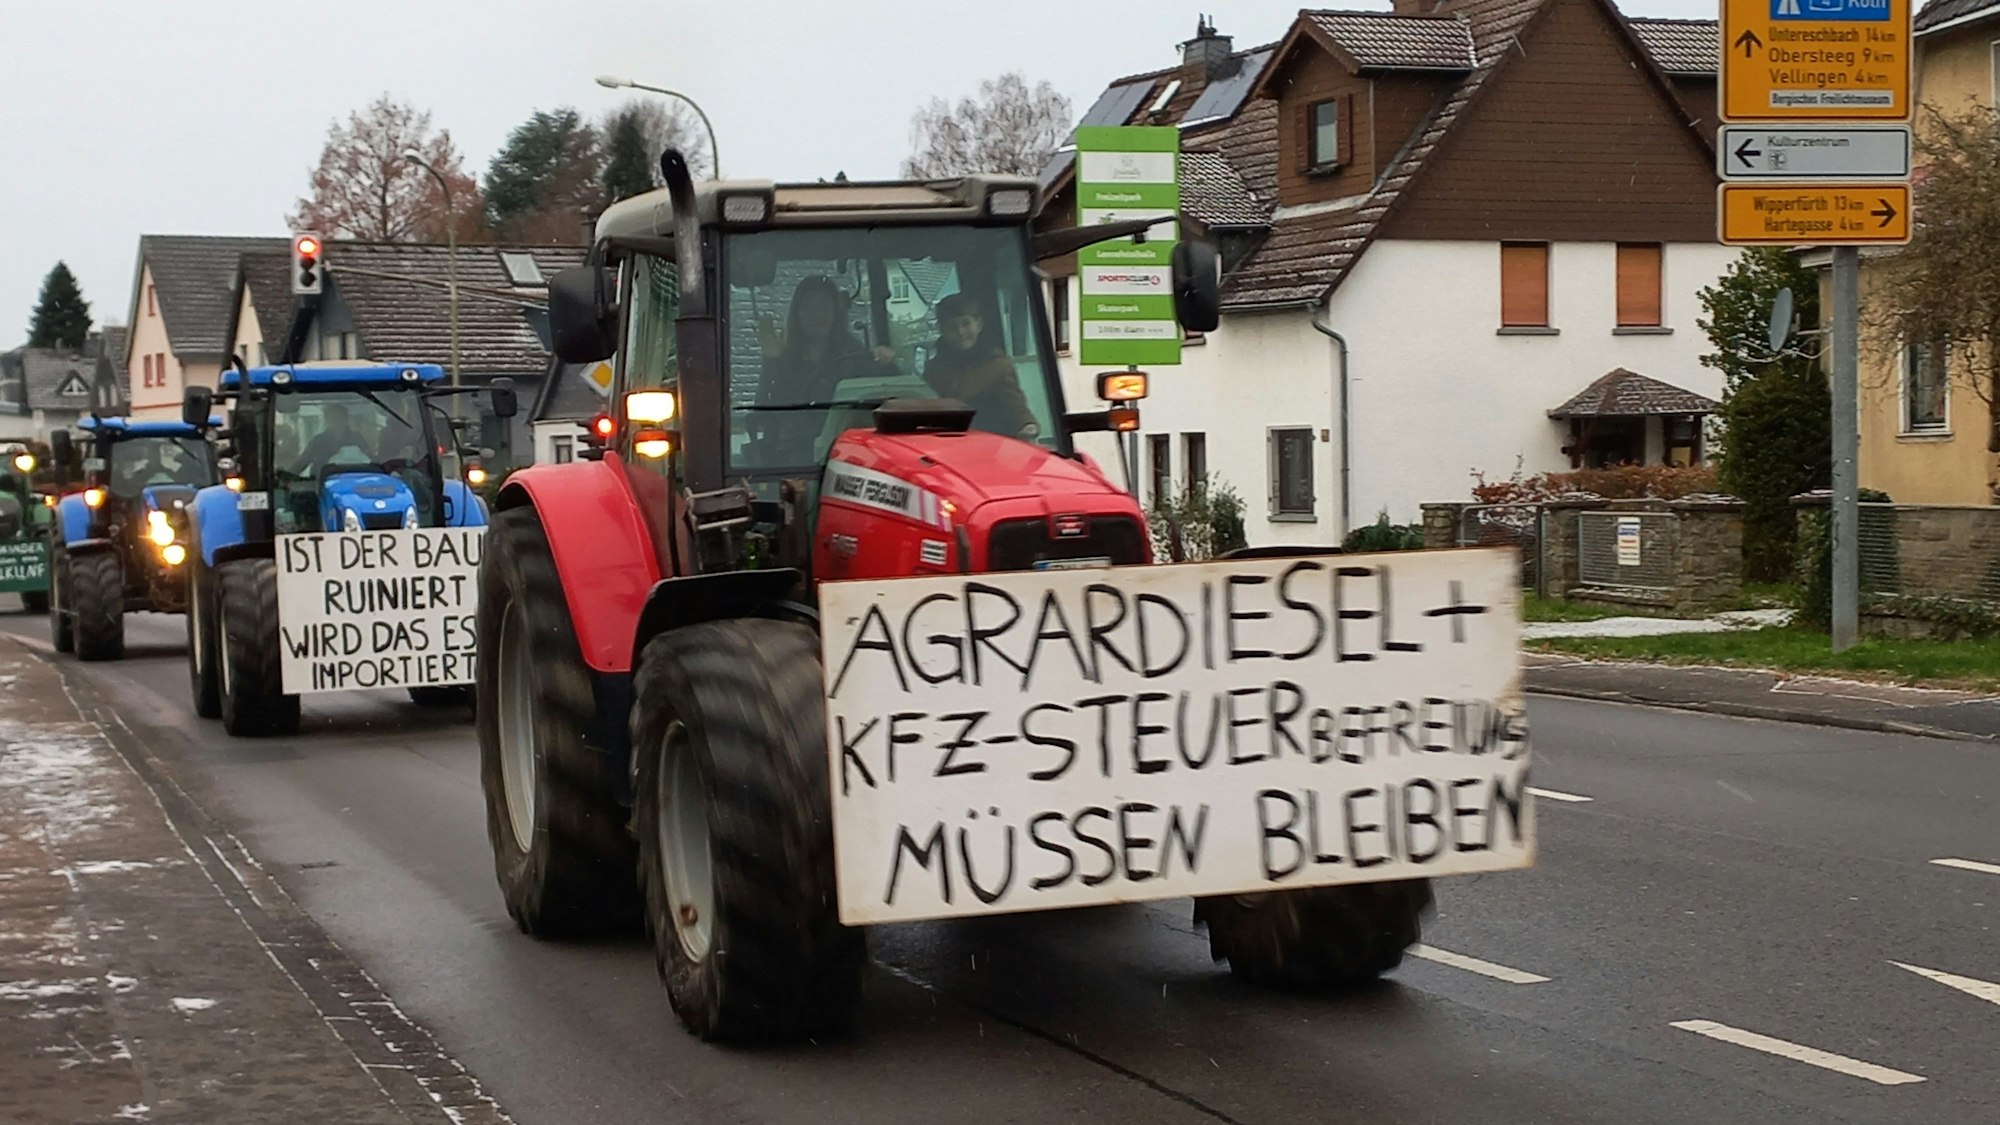 Mehrere Traktoren mit Protestschildern fahren eine Straße entlang.